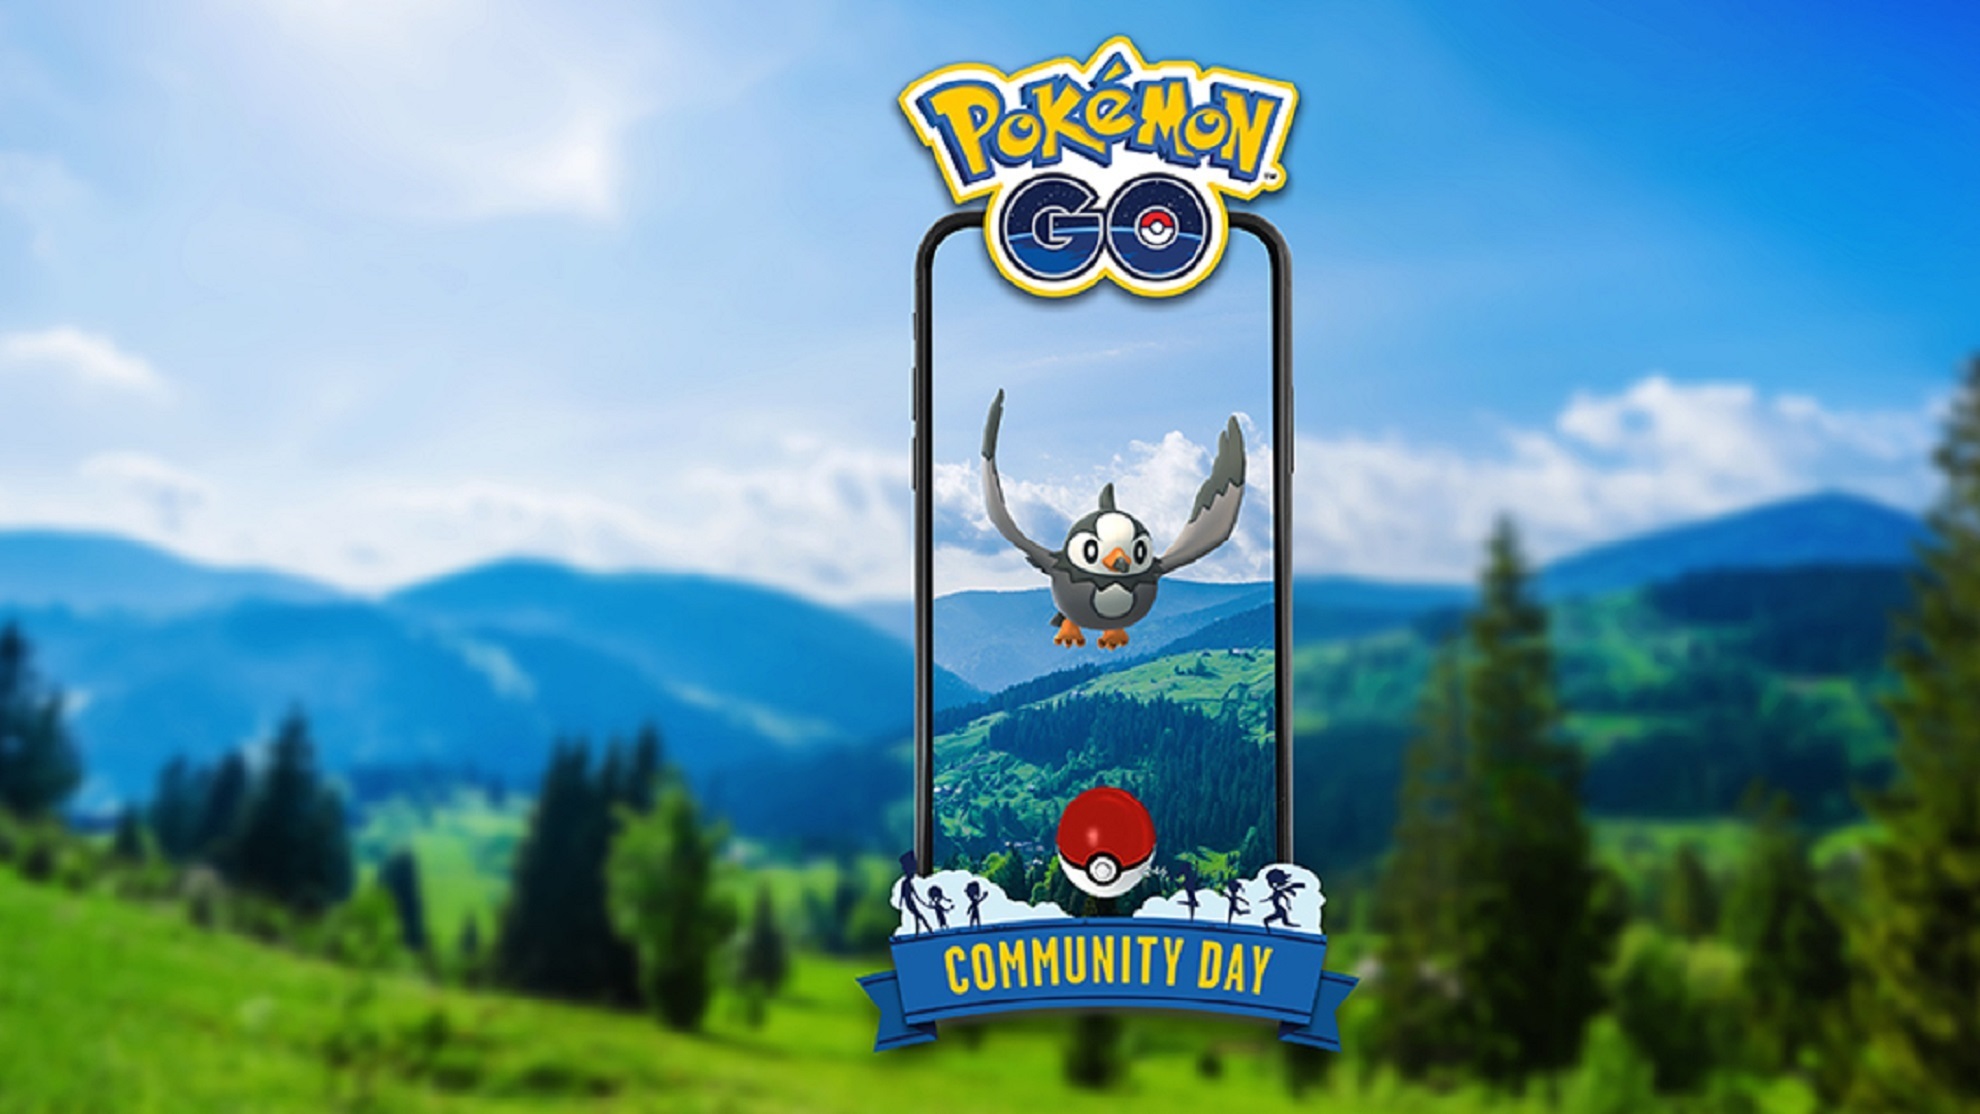 Día de la Comunidad de Pokémon GO julio 2022 (Starly): cuándo es, horario, bonus, movimientos exclusivos...